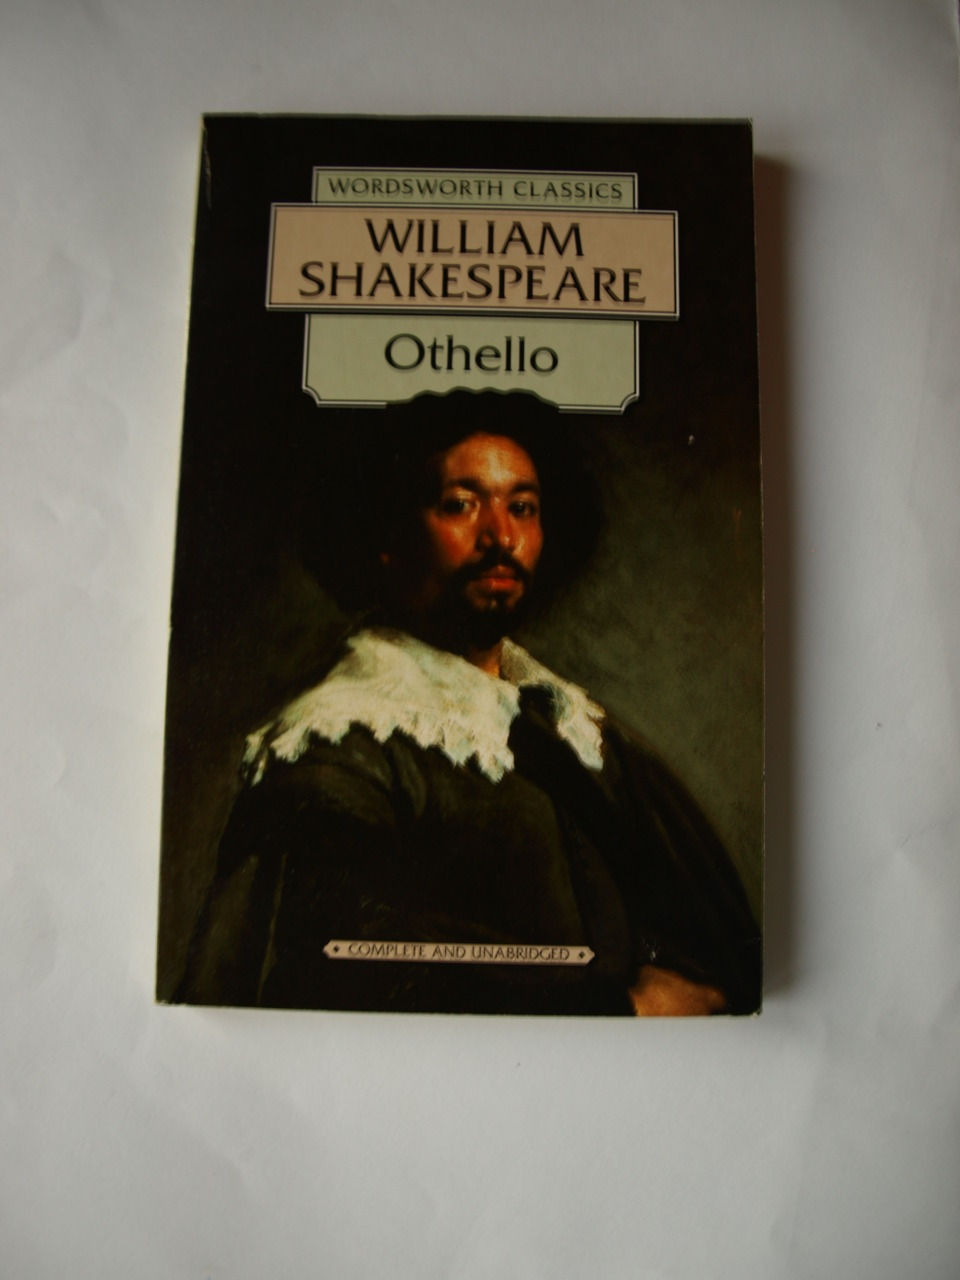 William shakespeare